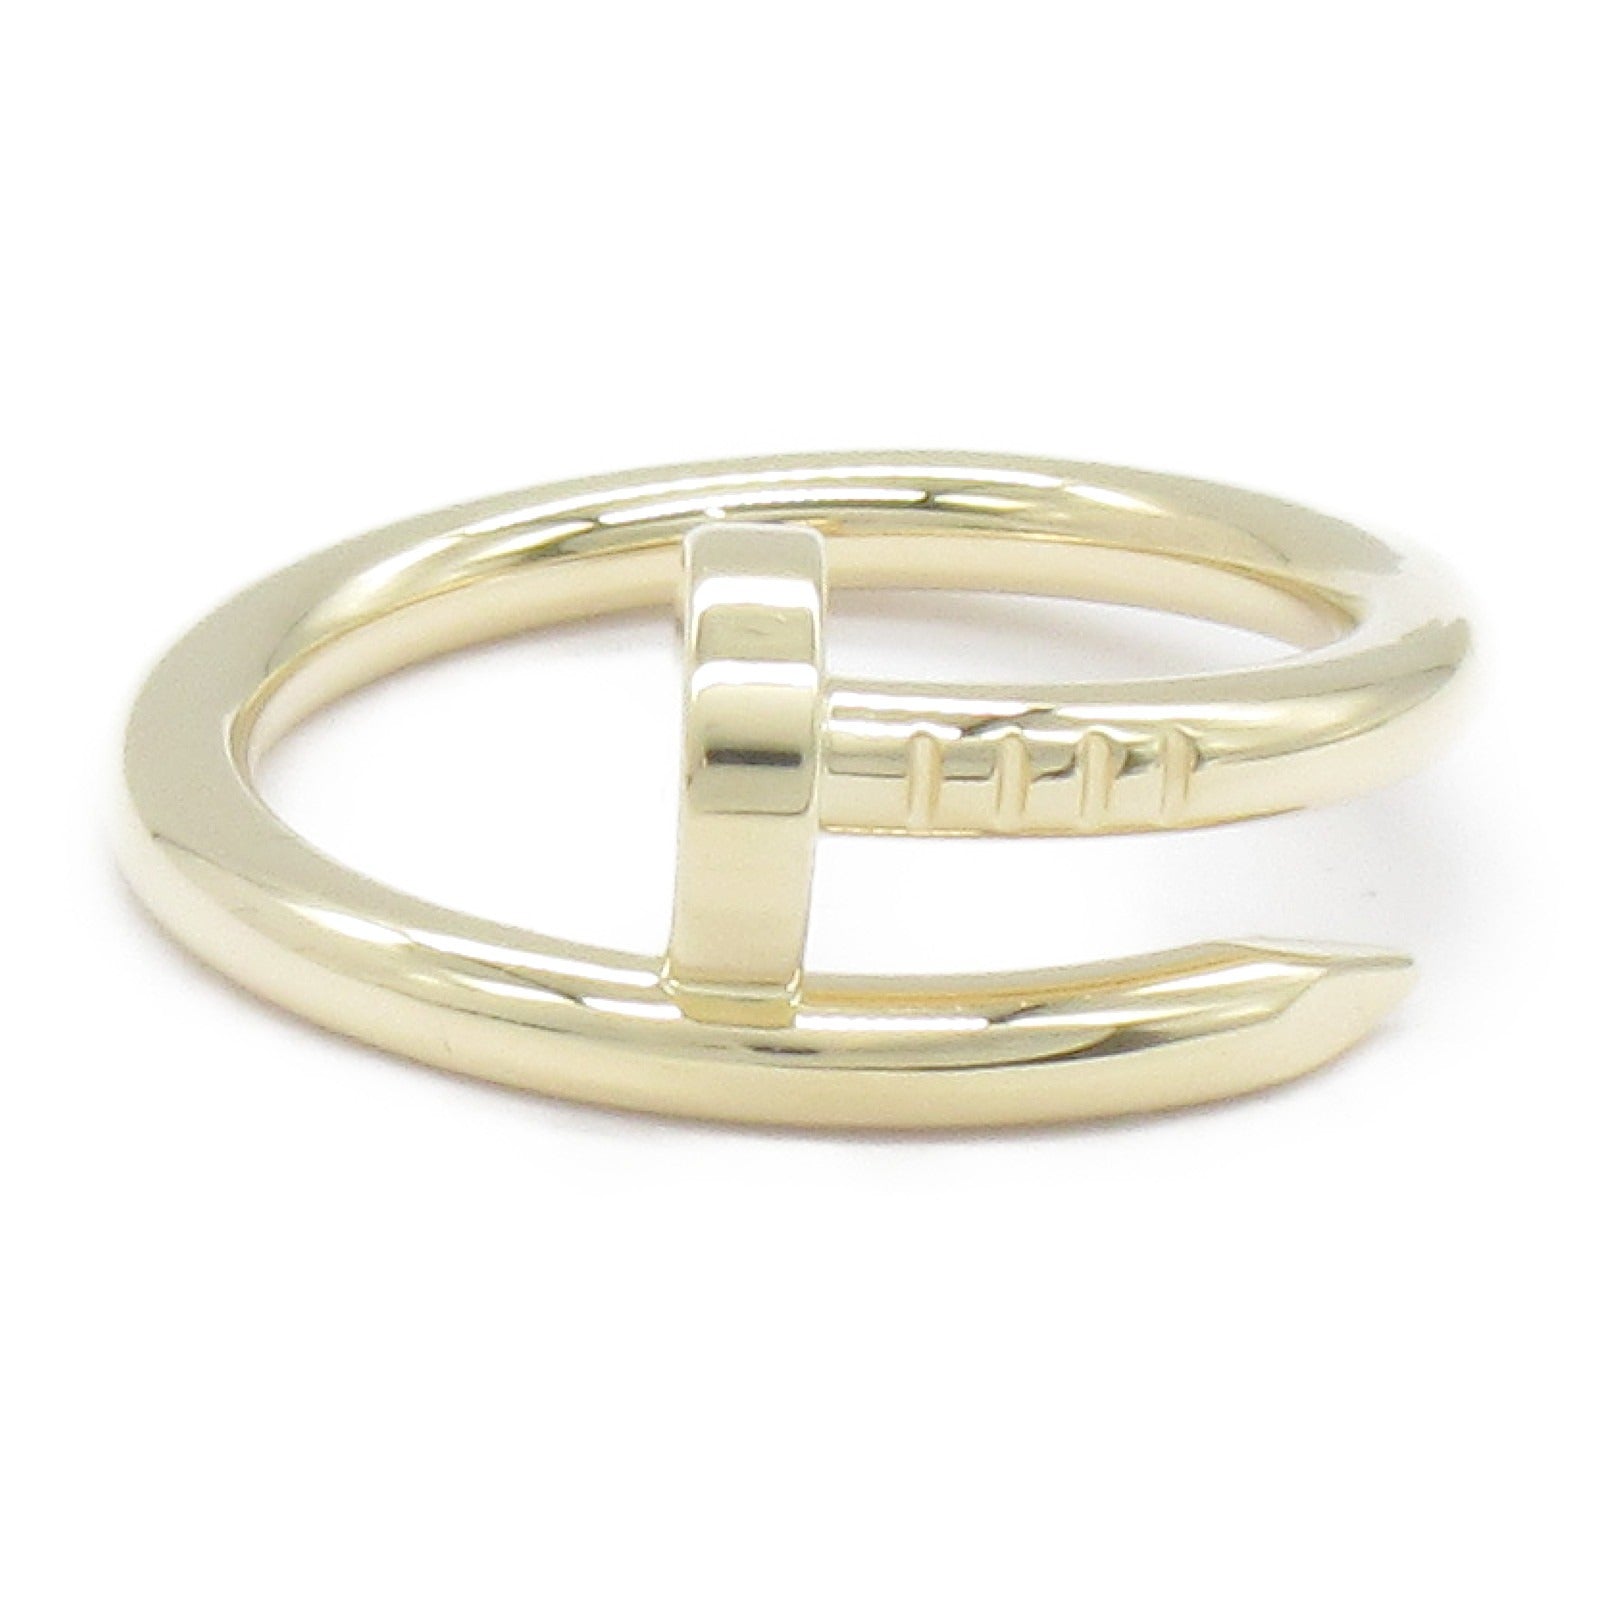 Cartier Cartier Ring Ring Ring Ring Jewelry K18 (Yellow G)  Gold